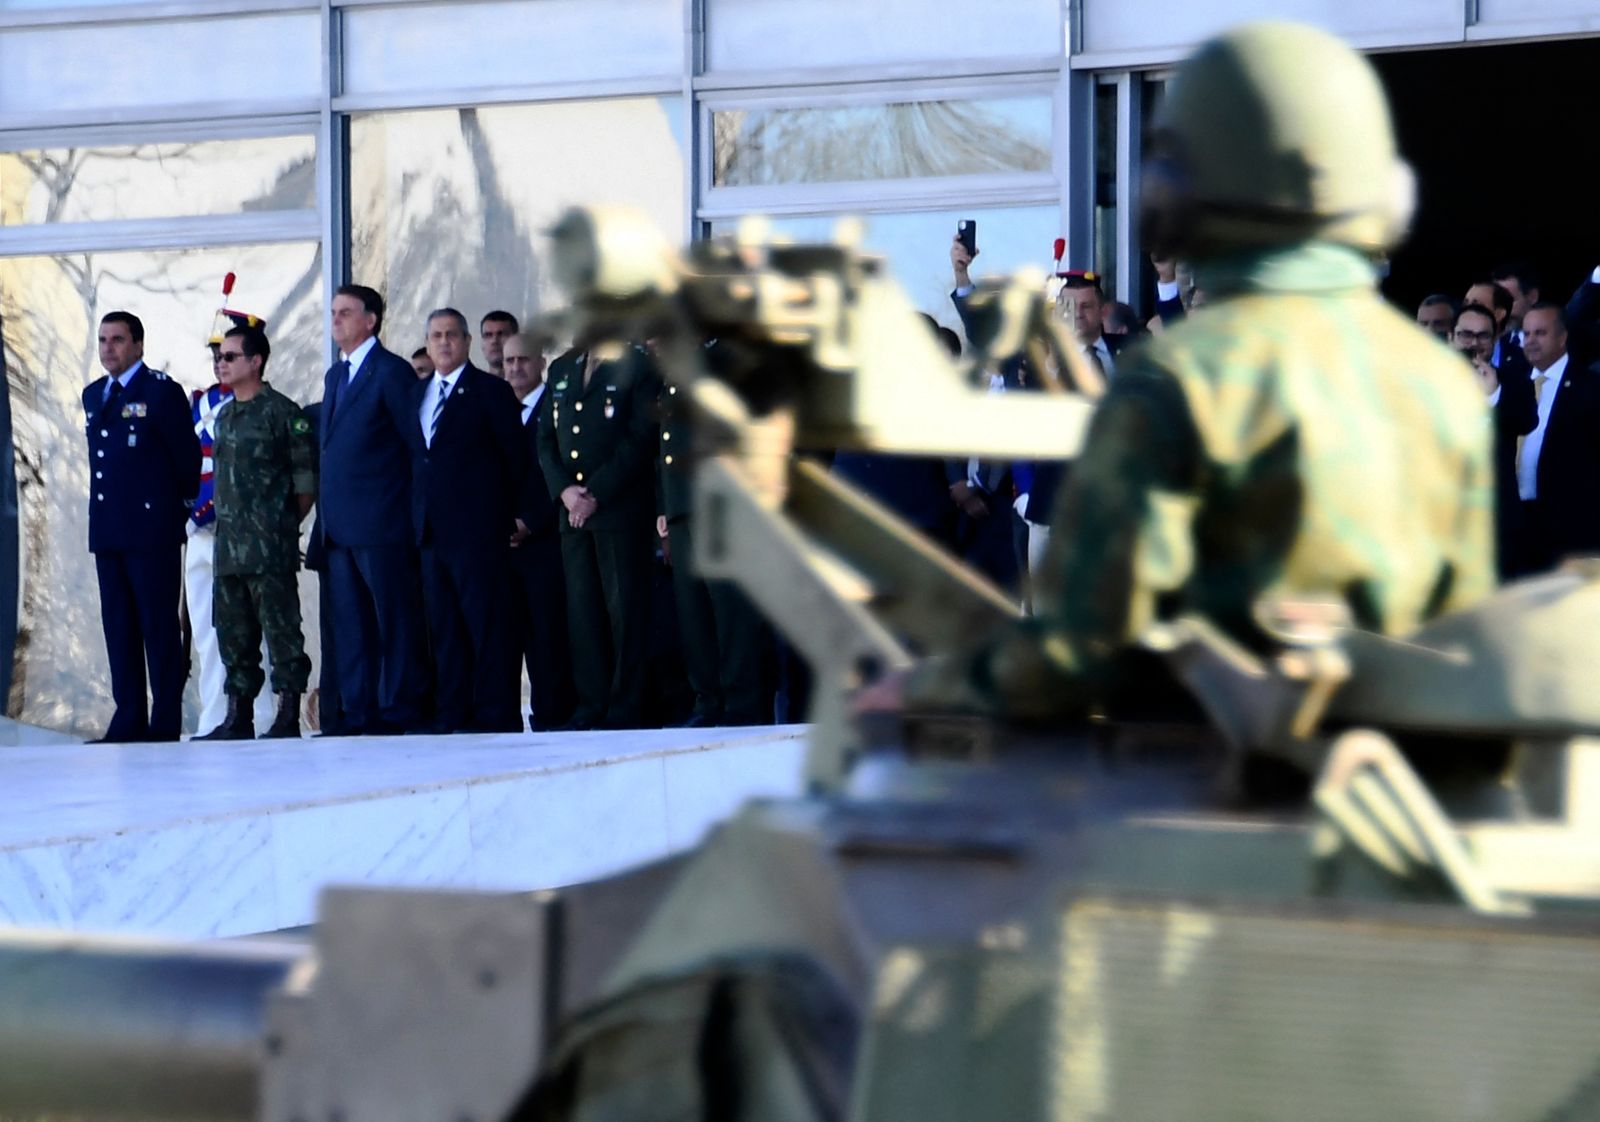 الرئيس البرازيلي جايير بولسونارو مع وزراء وقادة الجيش يحضرون عرضاً عسكرياً أمام قصر بلانالتو في برازيليا - 10 أغسطس 2021 - AFP